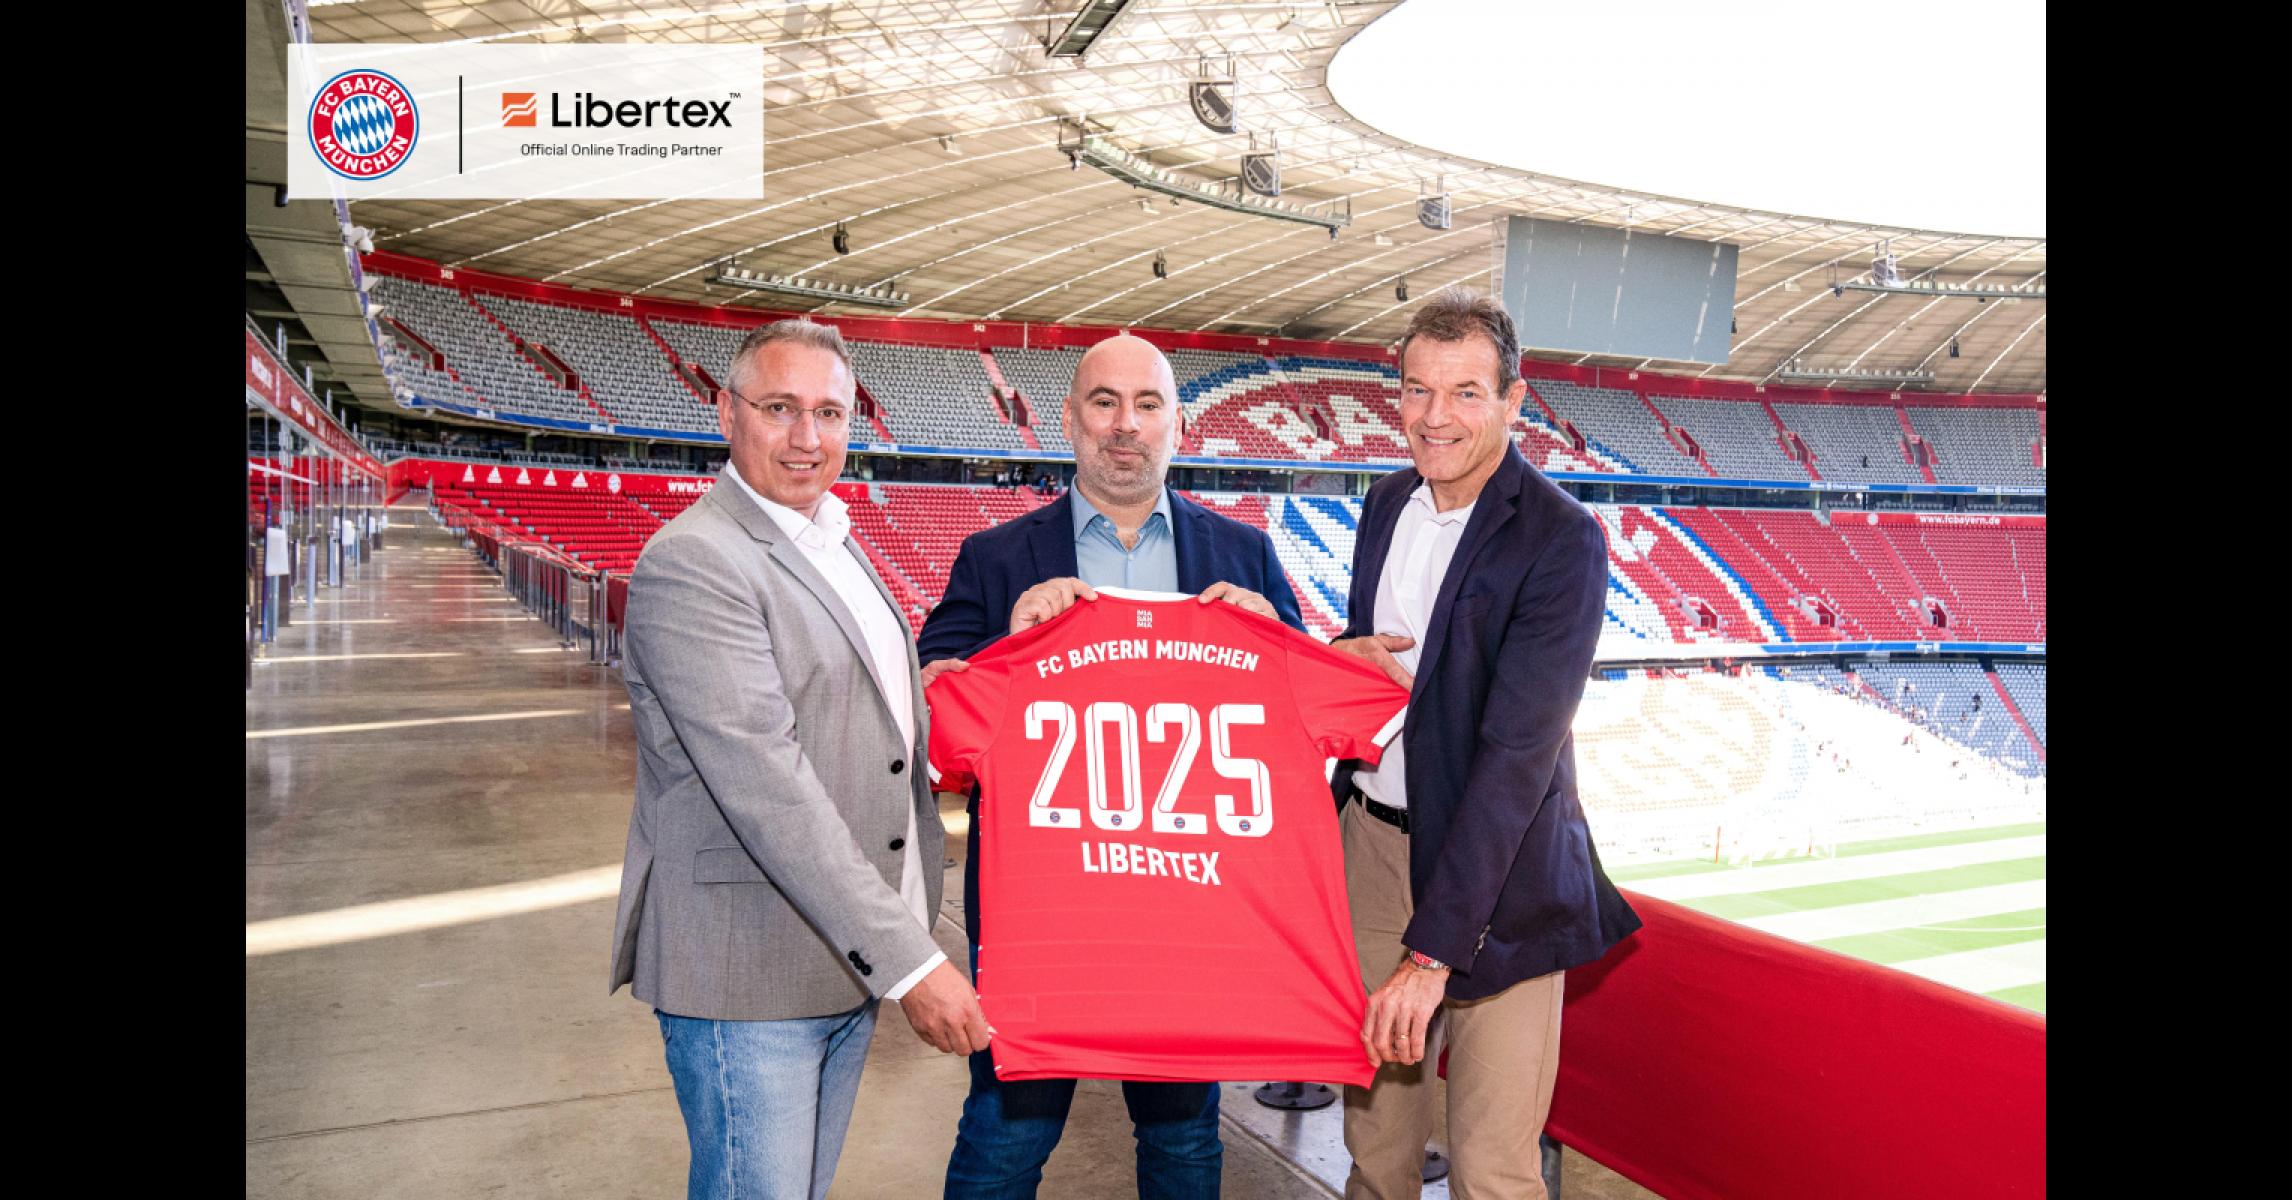 Libertex wird Offizieller Online Trading Partner des FC Bayern München Libertex